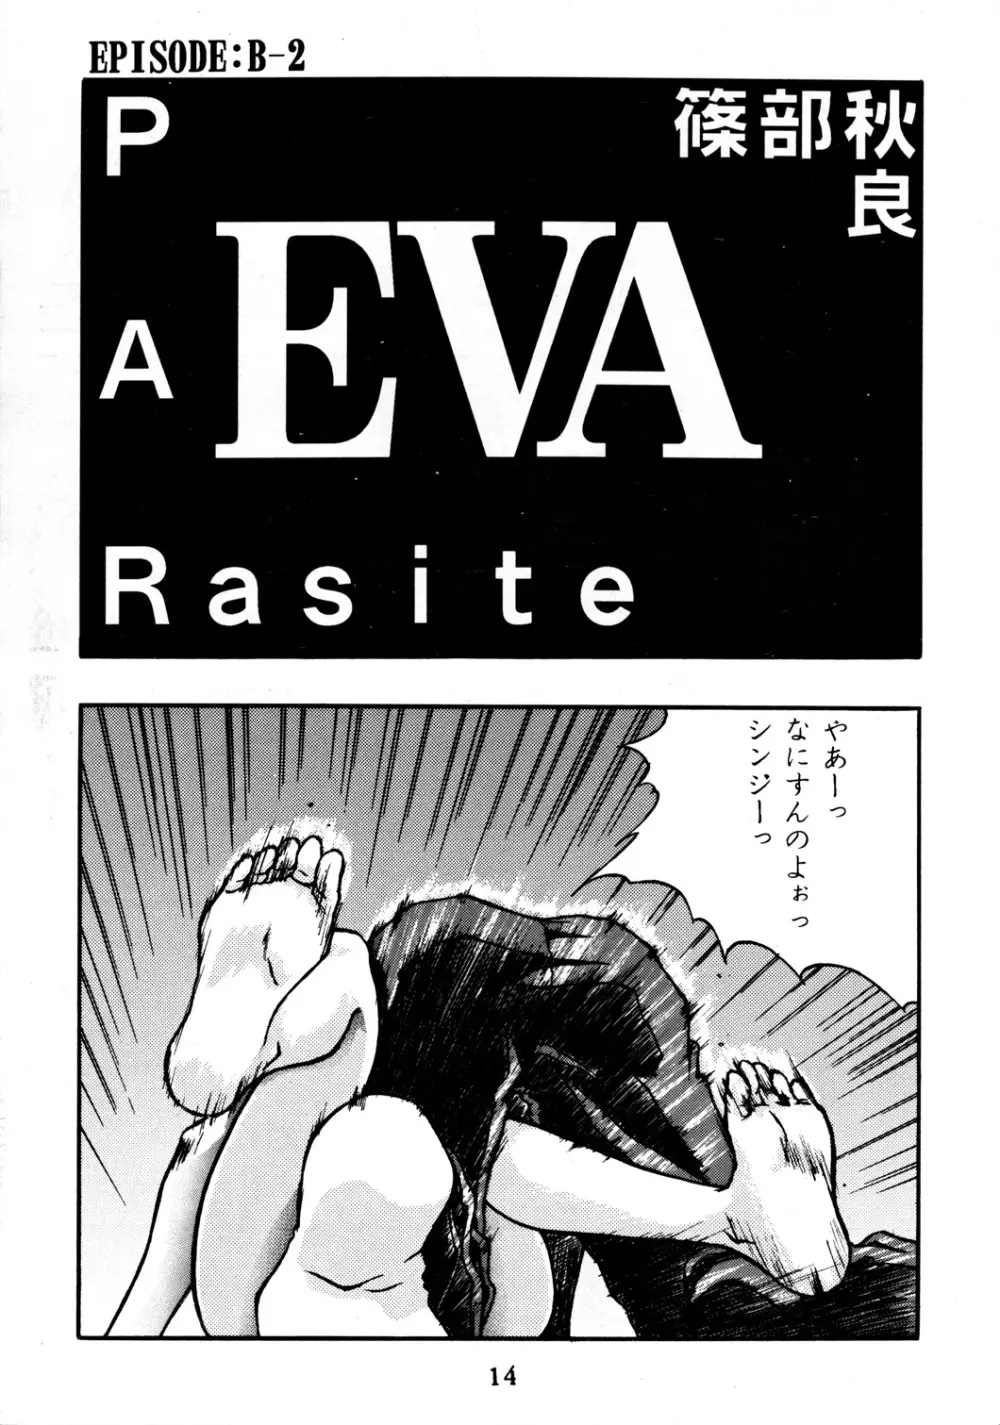 EVA PLUS B WEST JAPAN 仕様 13ページ